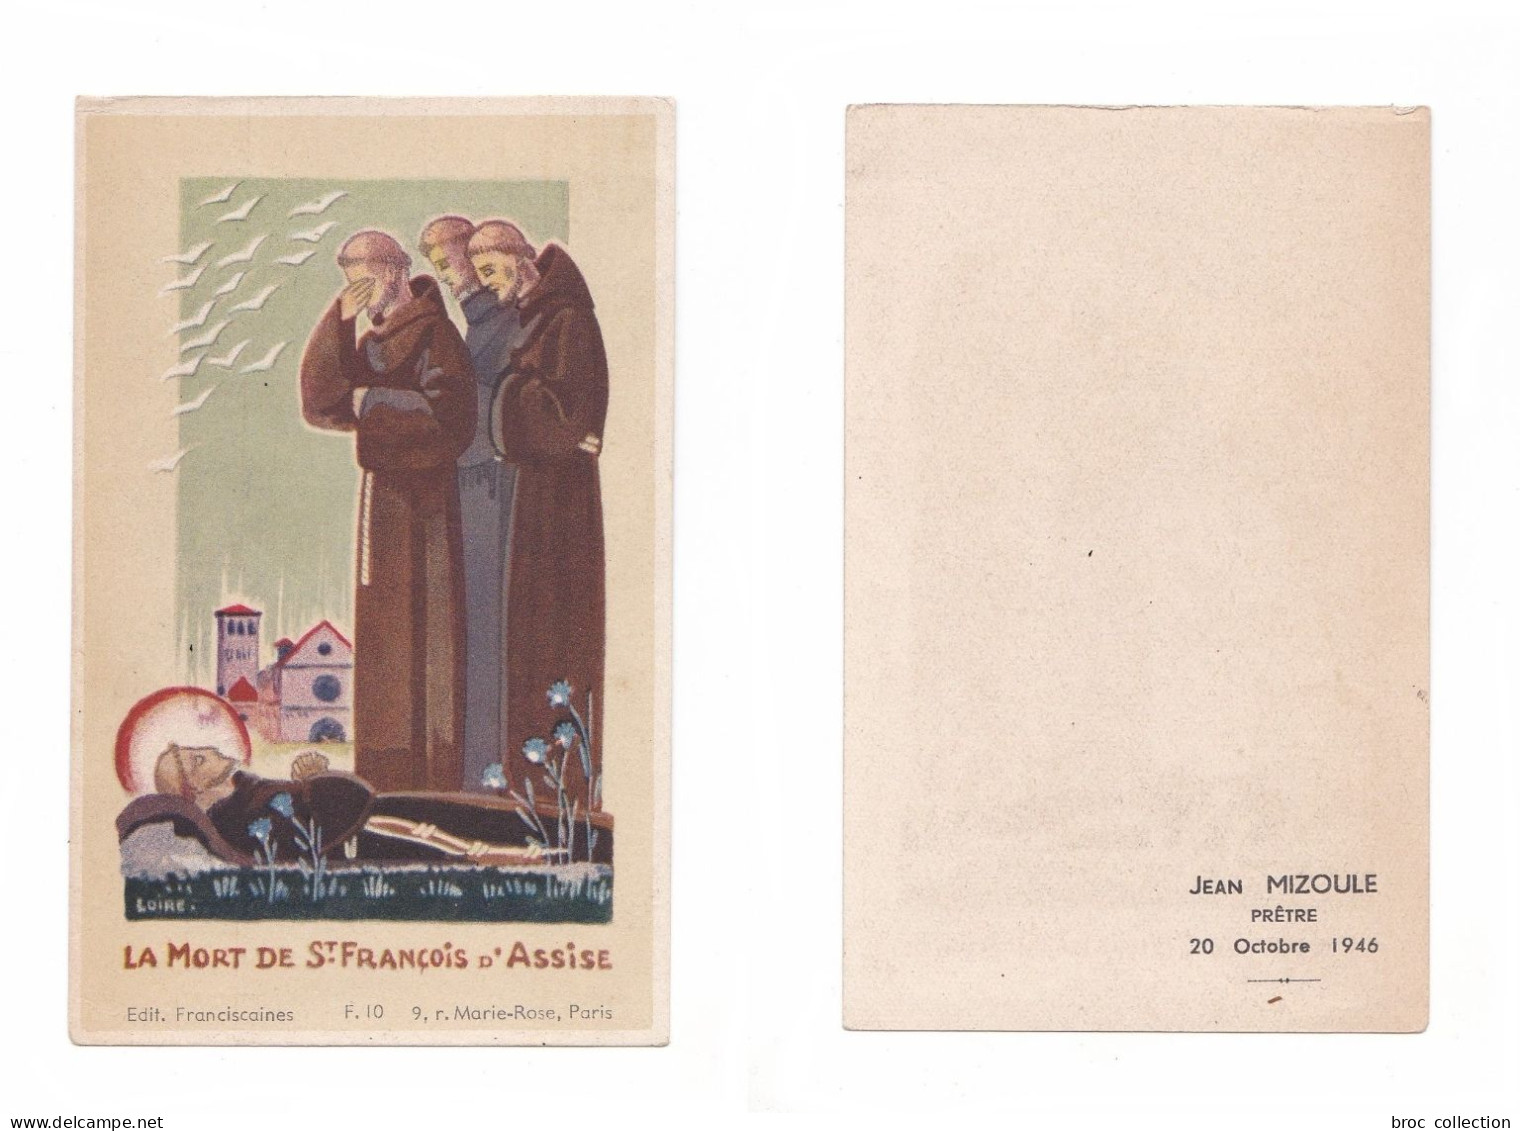 La Mort De Saint François D'Assise, Éditions Franciscaines F. 10, 1946, Jean Mizoule, Prêtre - Andachtsbilder